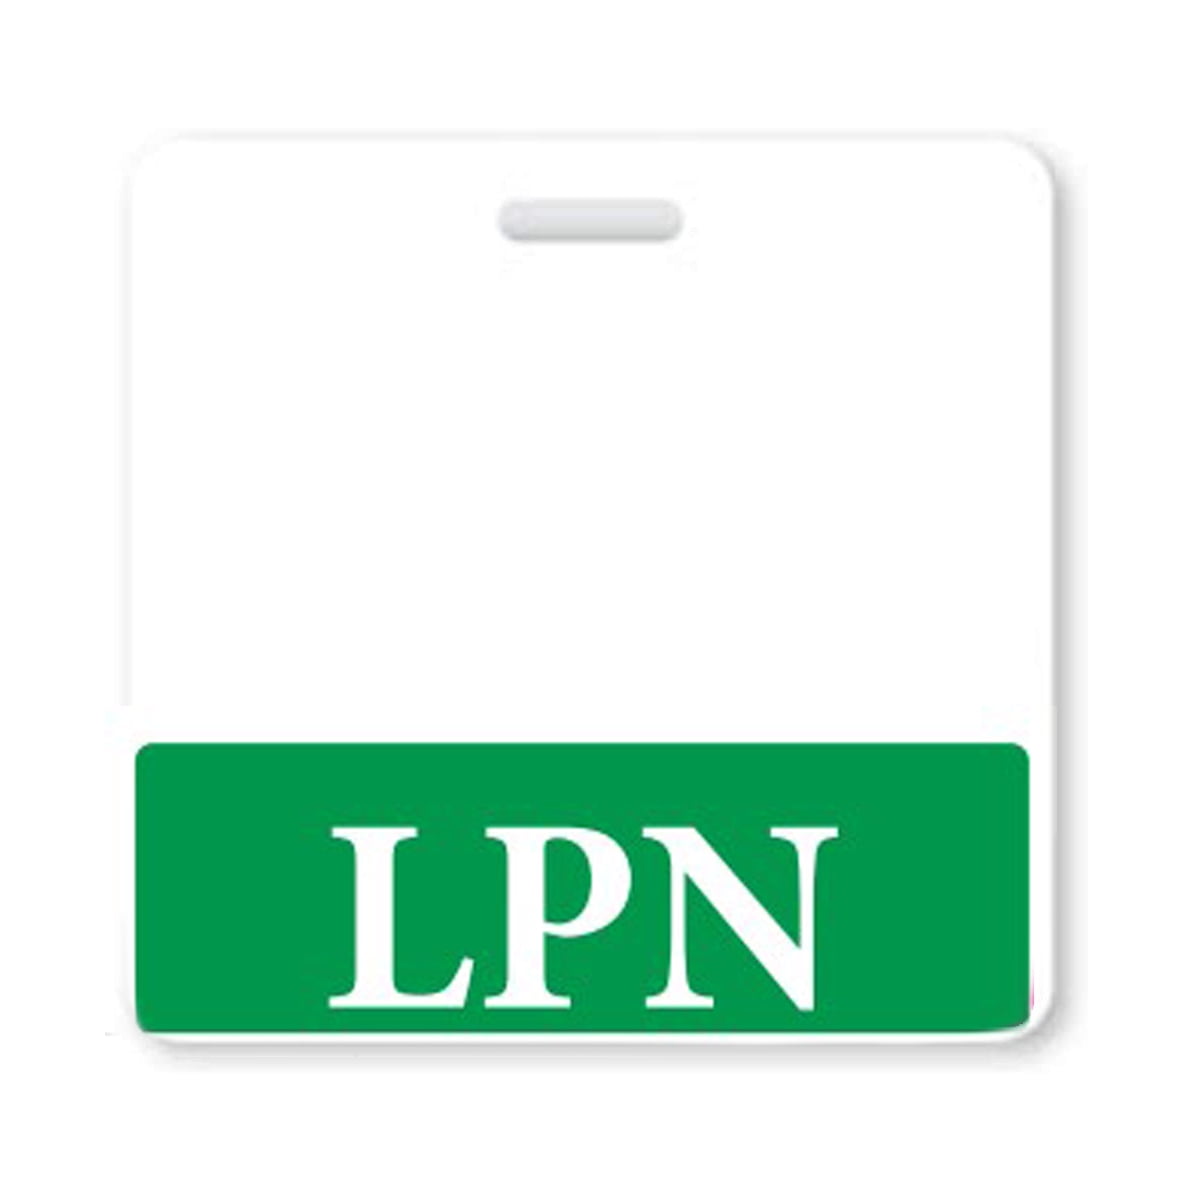 LVN Badge Tac